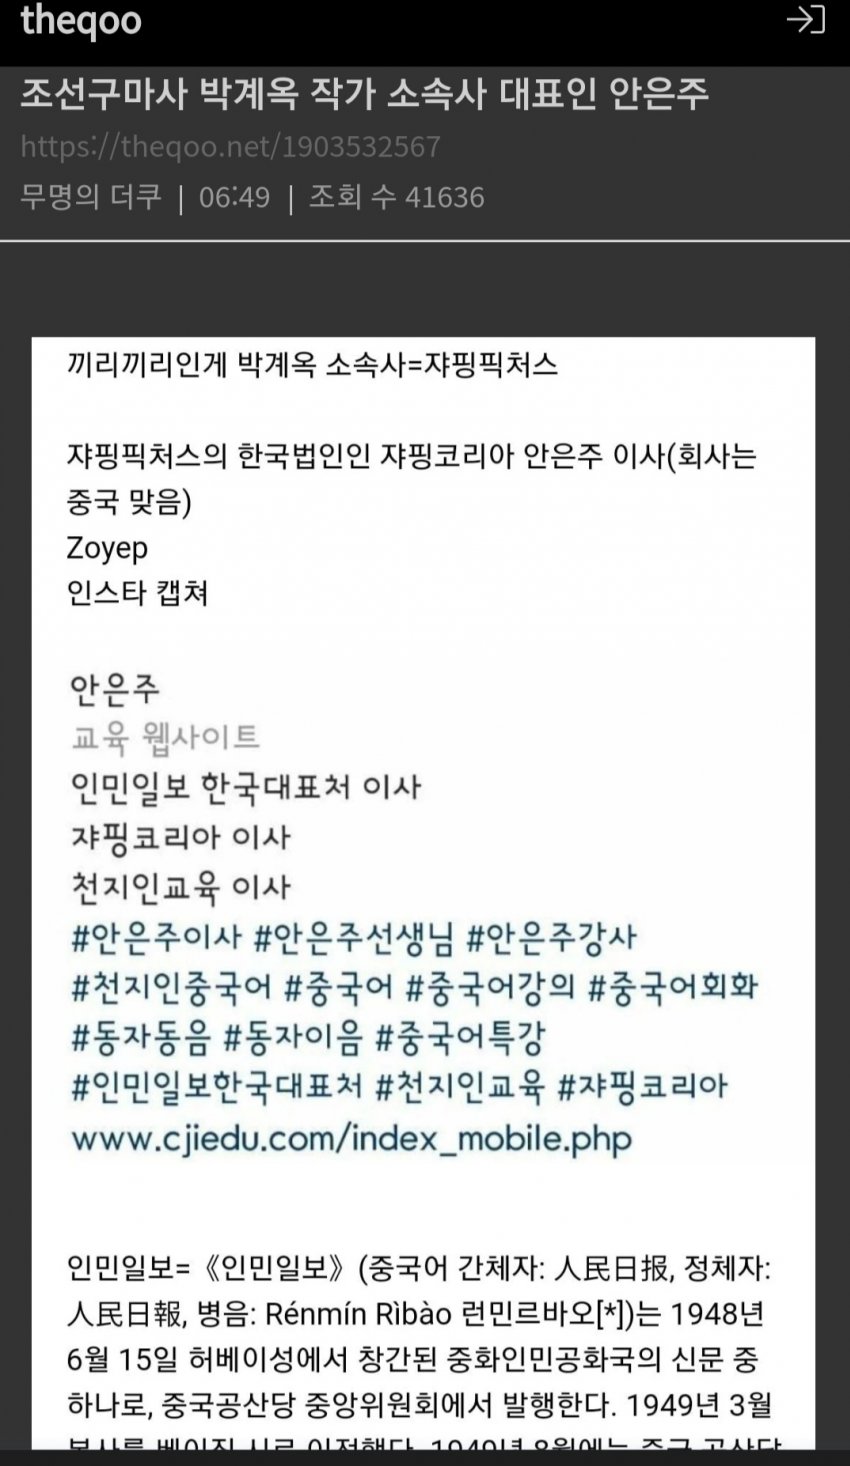 조선족구마사 소속사 대표가 인민일보 한국지사 중국인